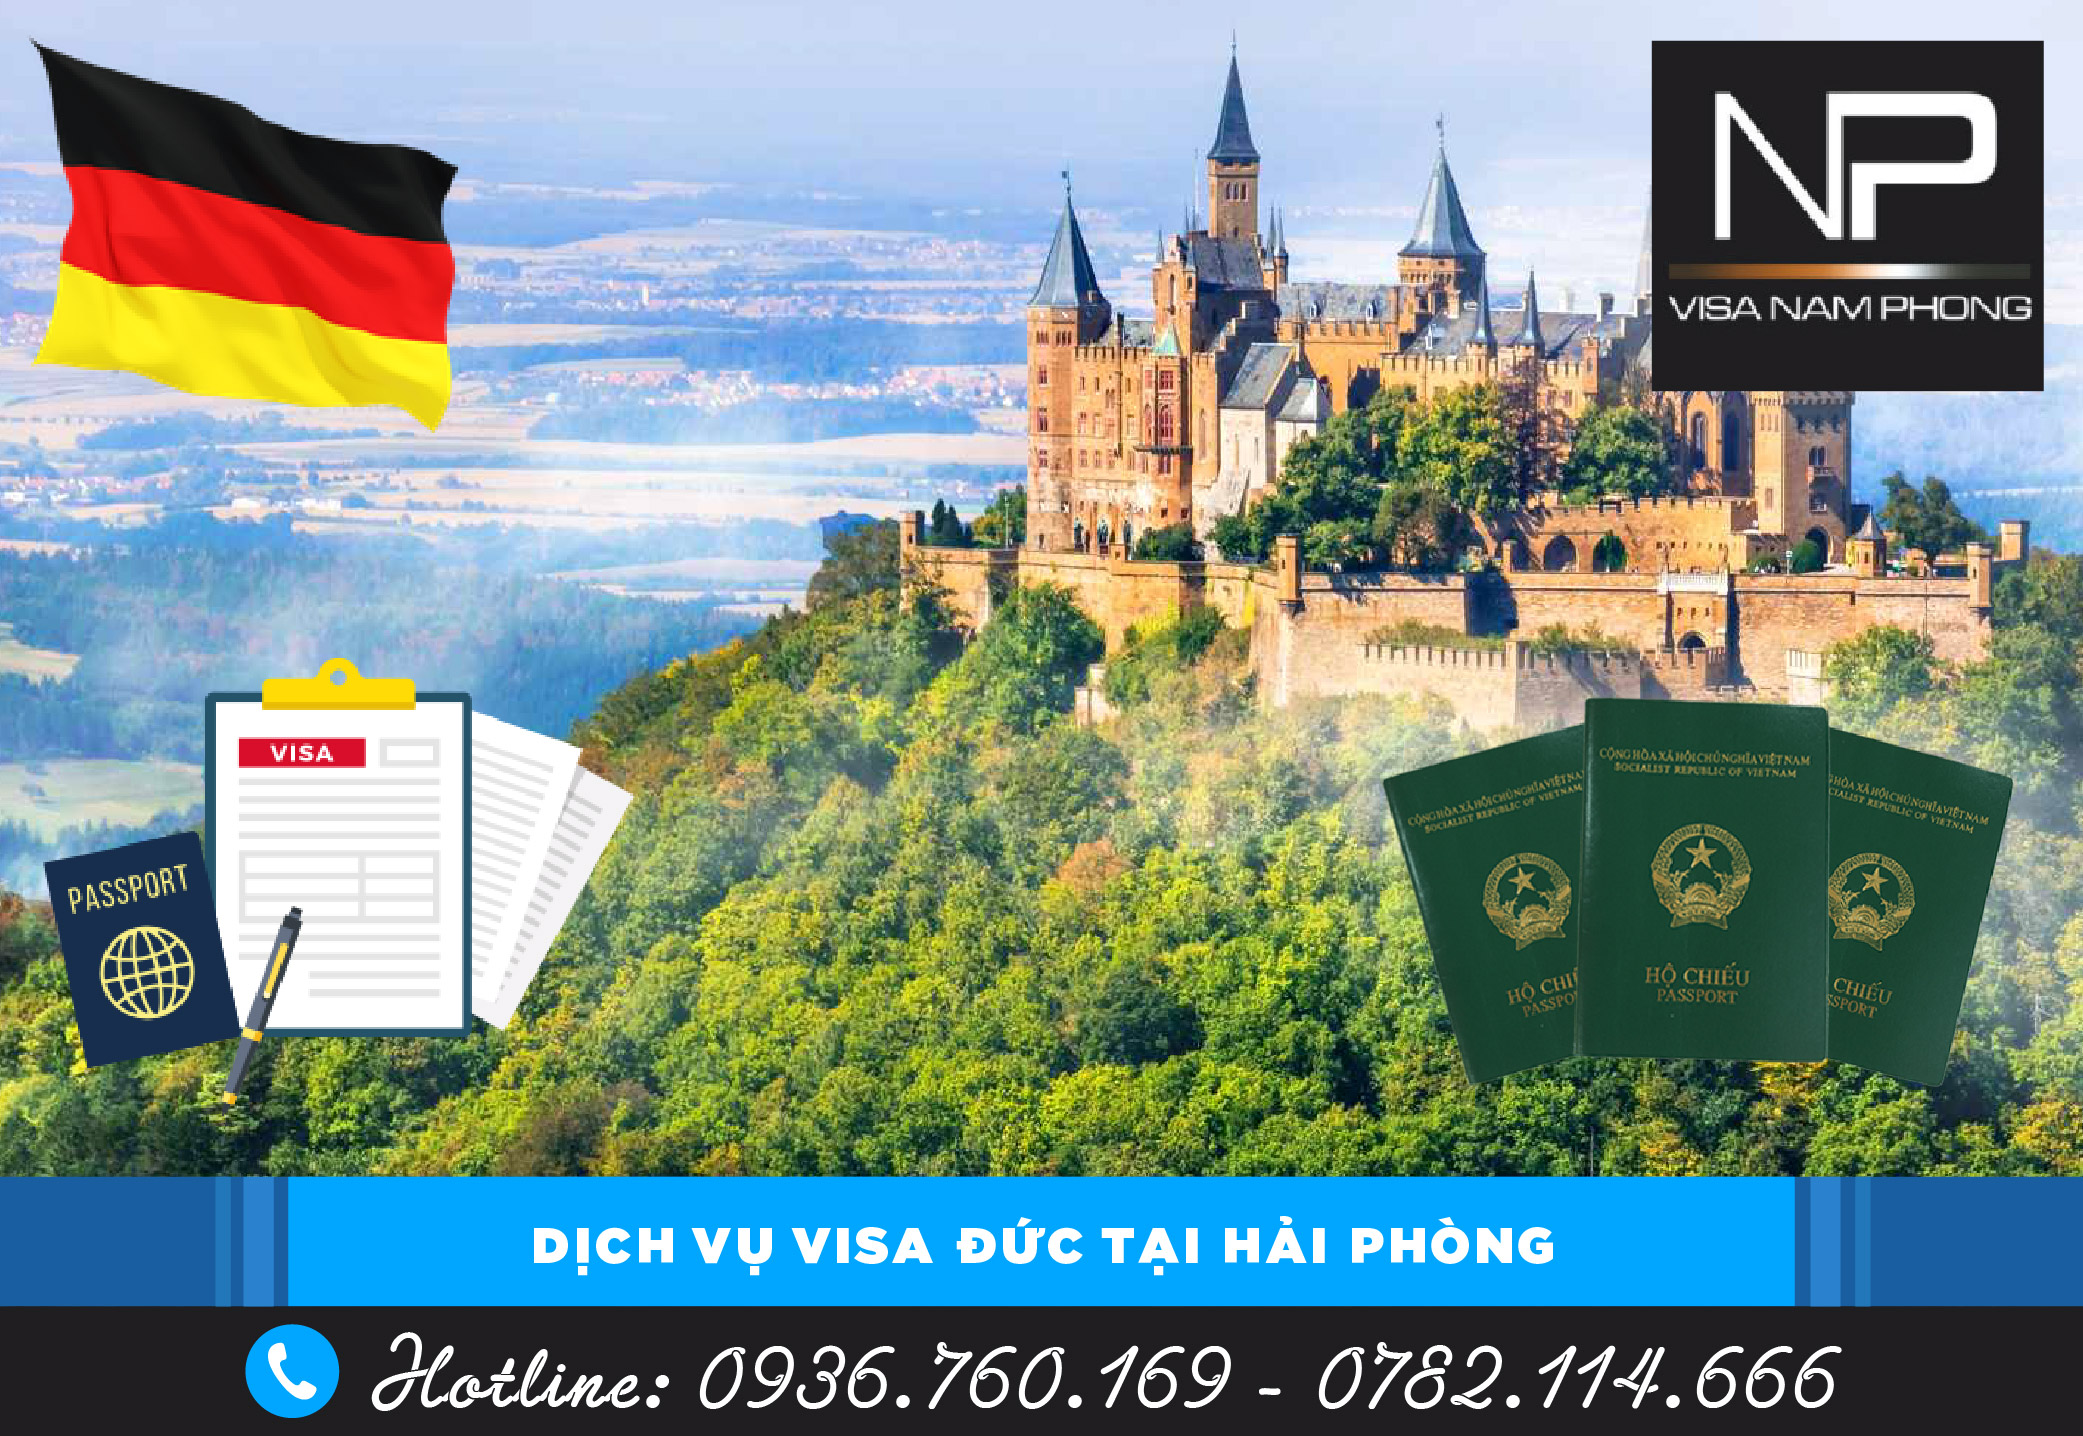 Dịch vụ visa Đức tại Hải Phòng